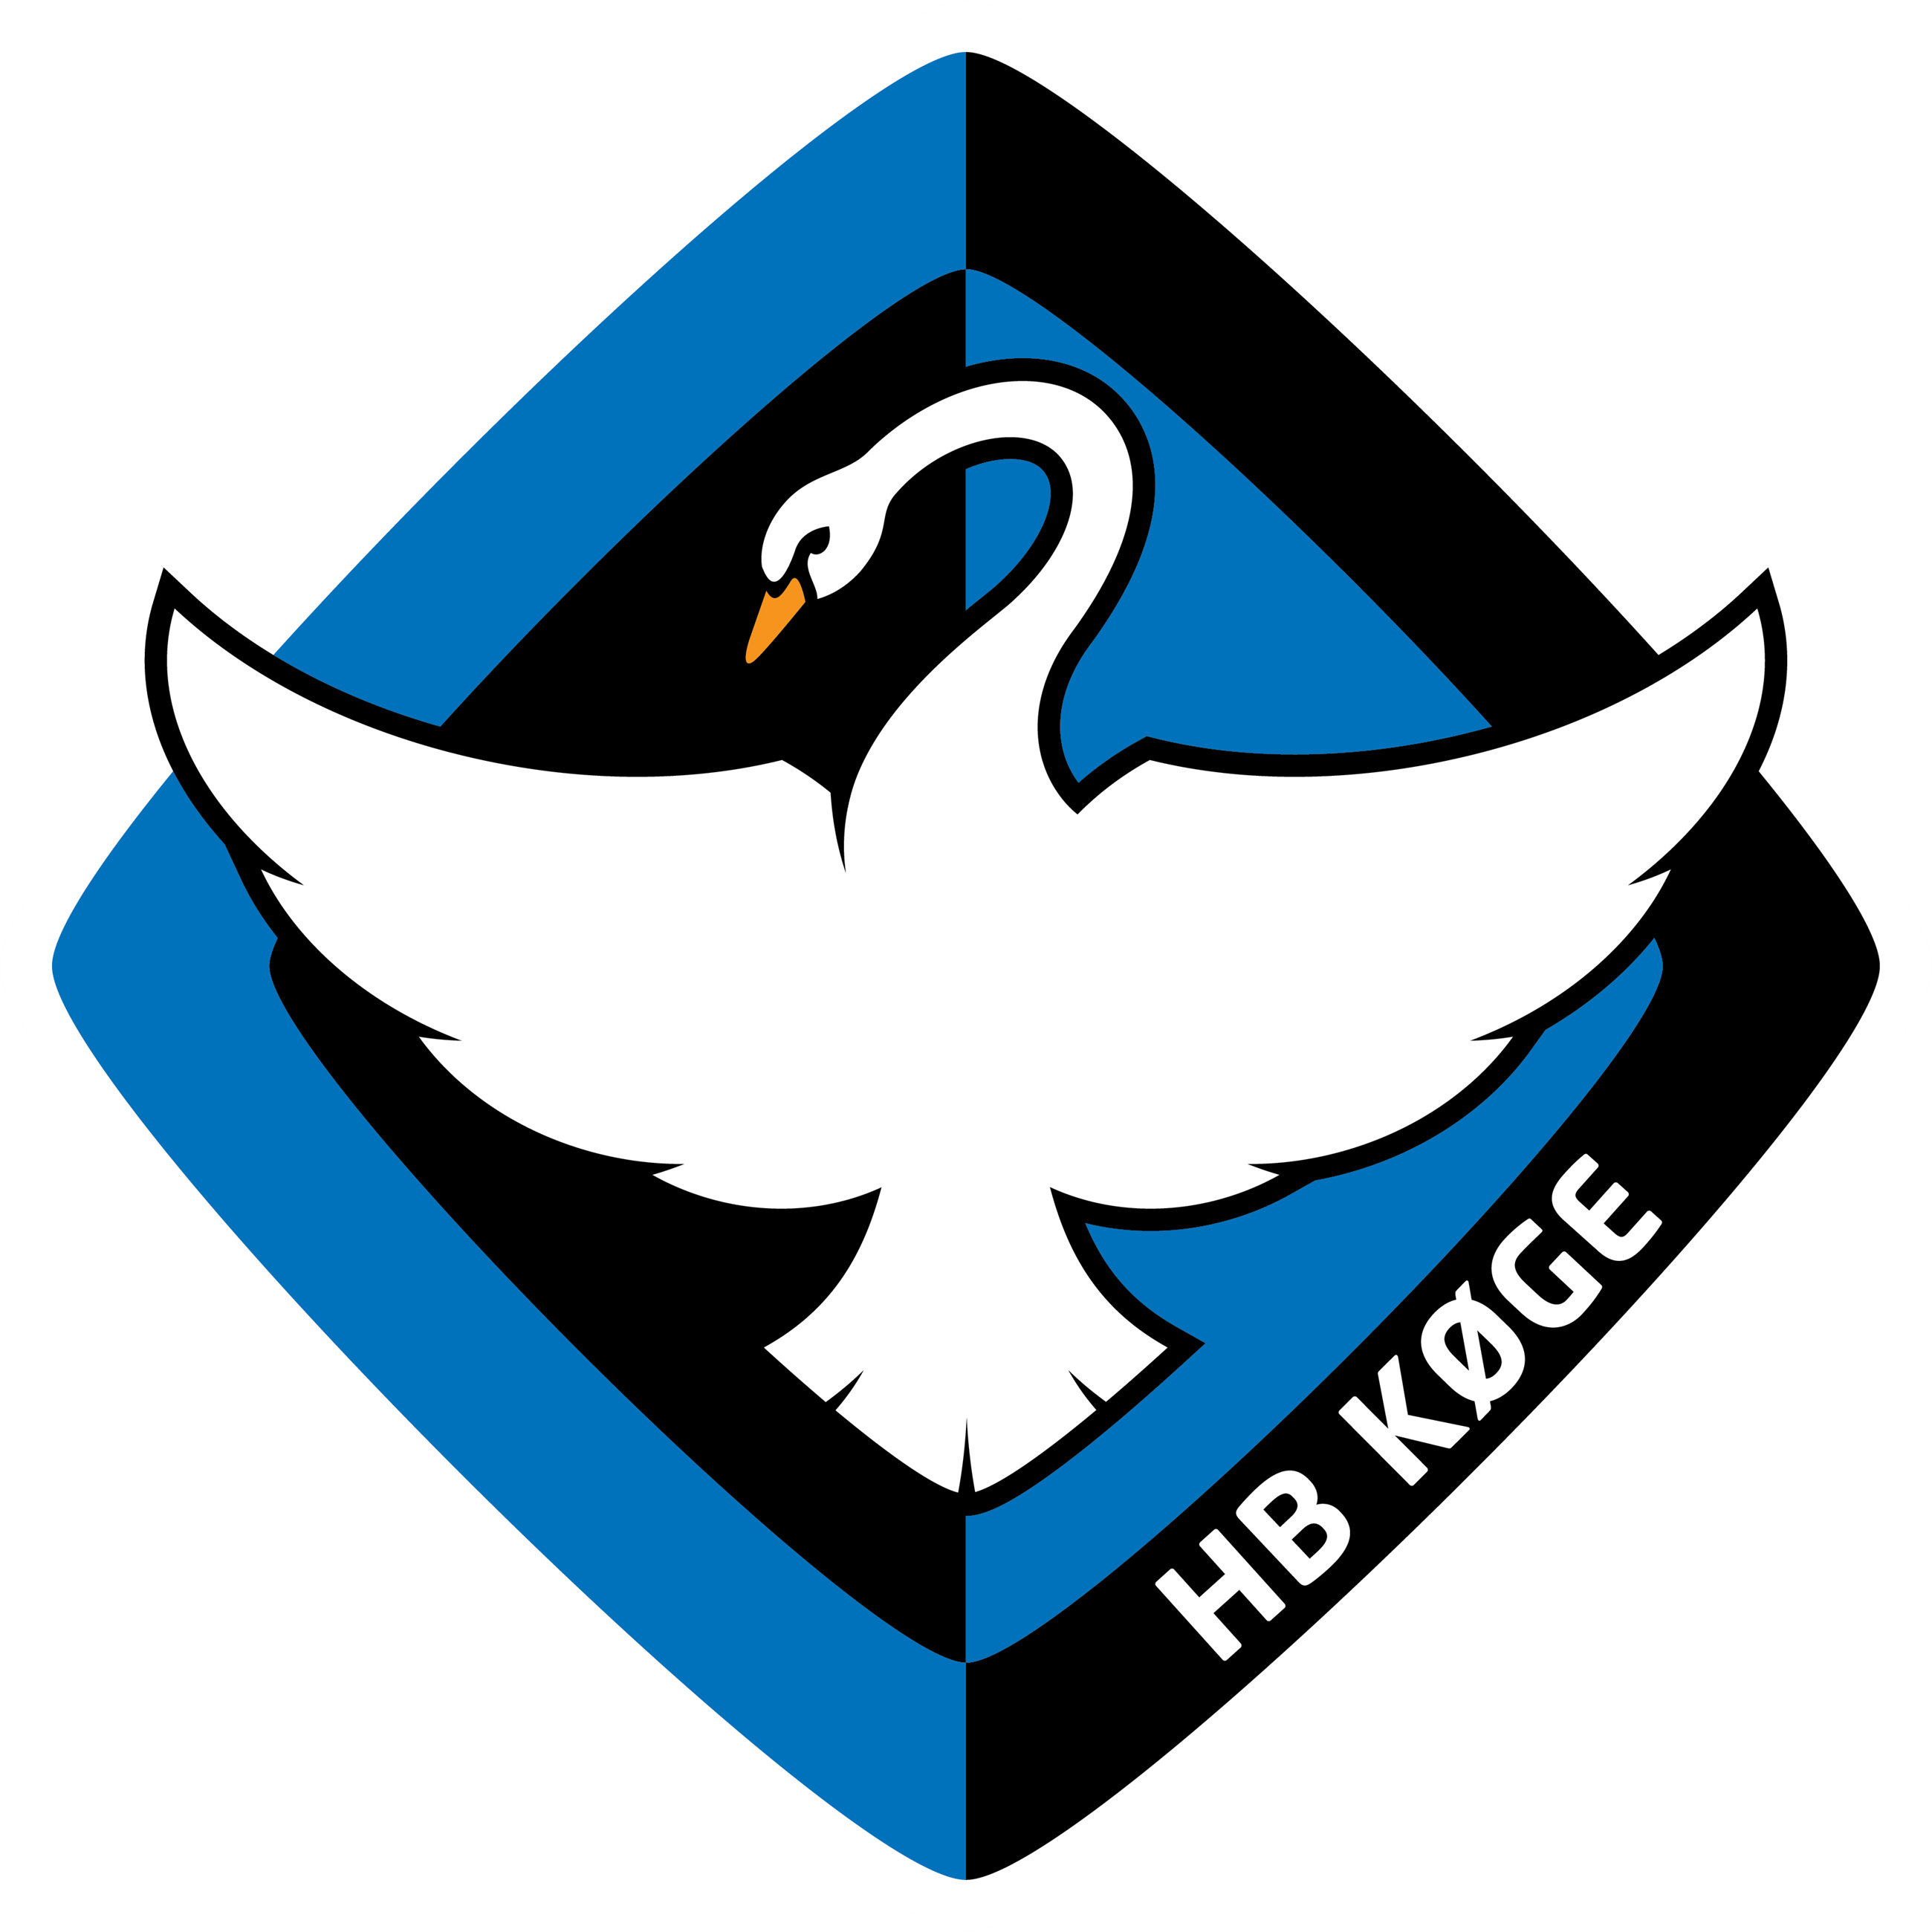 logo_hbkoge_cmyk-1-1